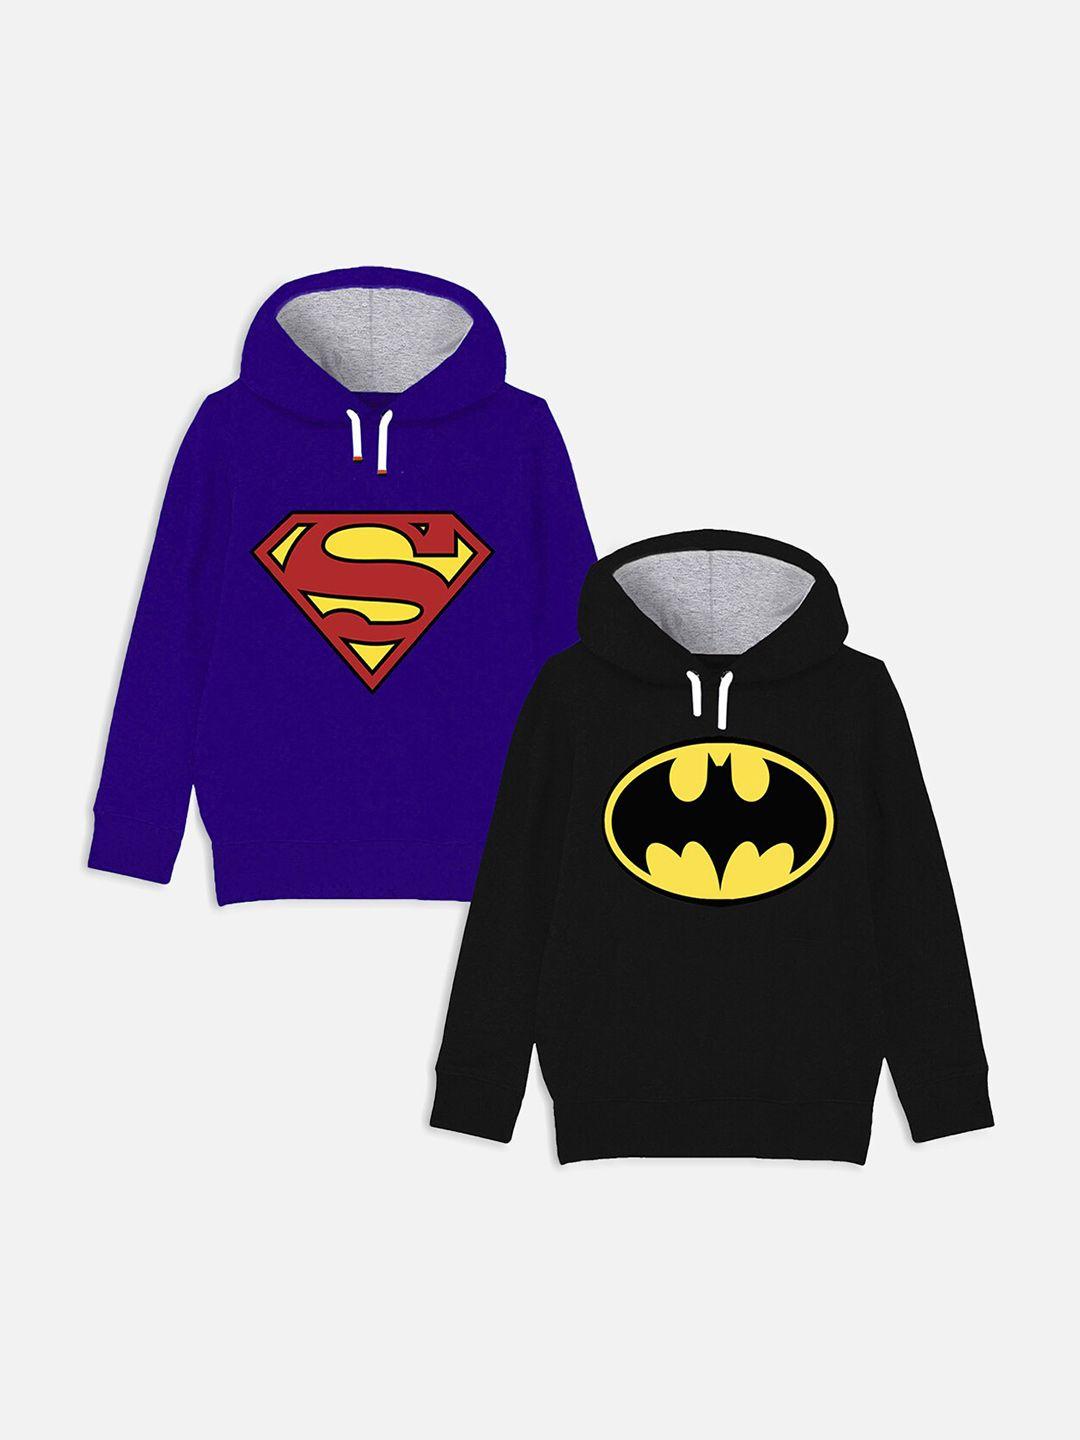 yk justice league boys pack of 2 superhero logo printed hooded sweatshirt